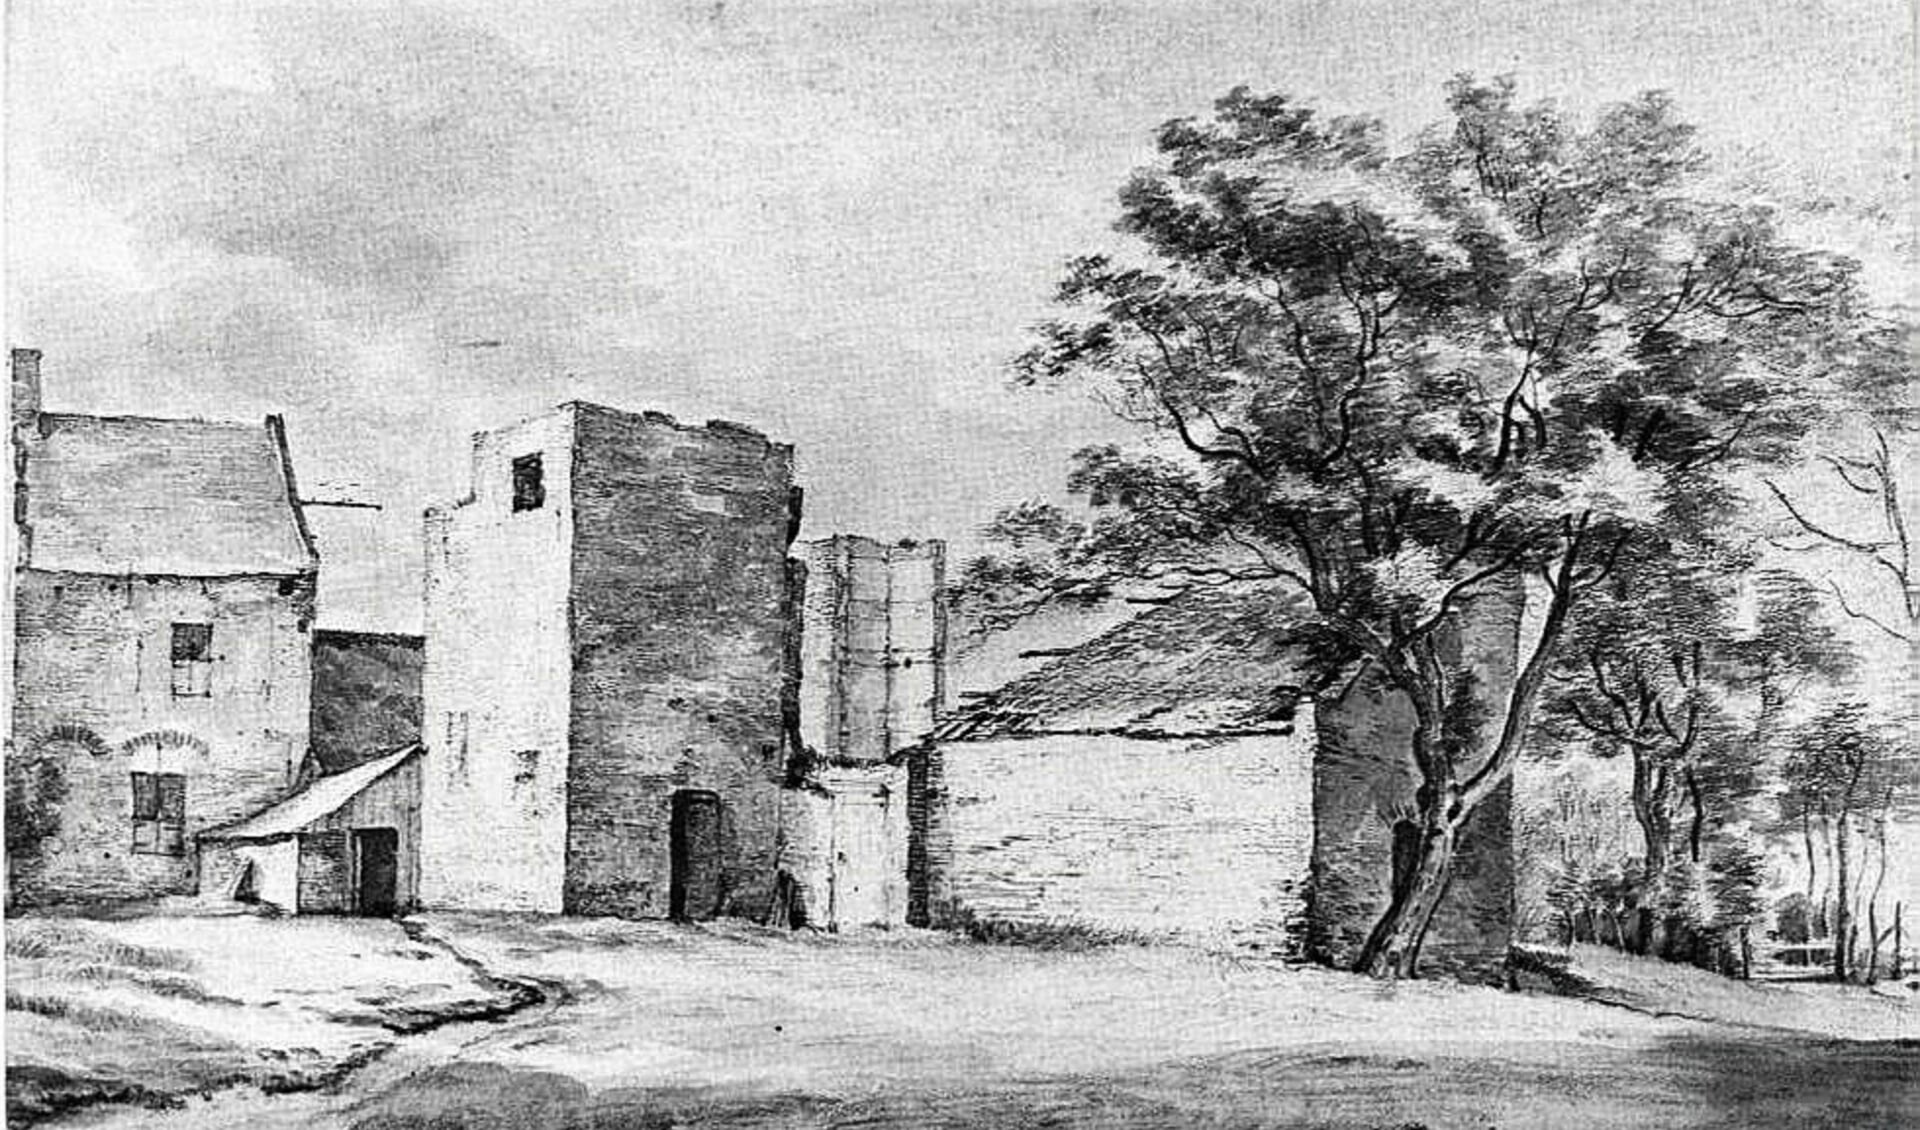 Oudste tekening kasteel ’t Sant als ruïne getekend door Roelant Roghman in 1648.